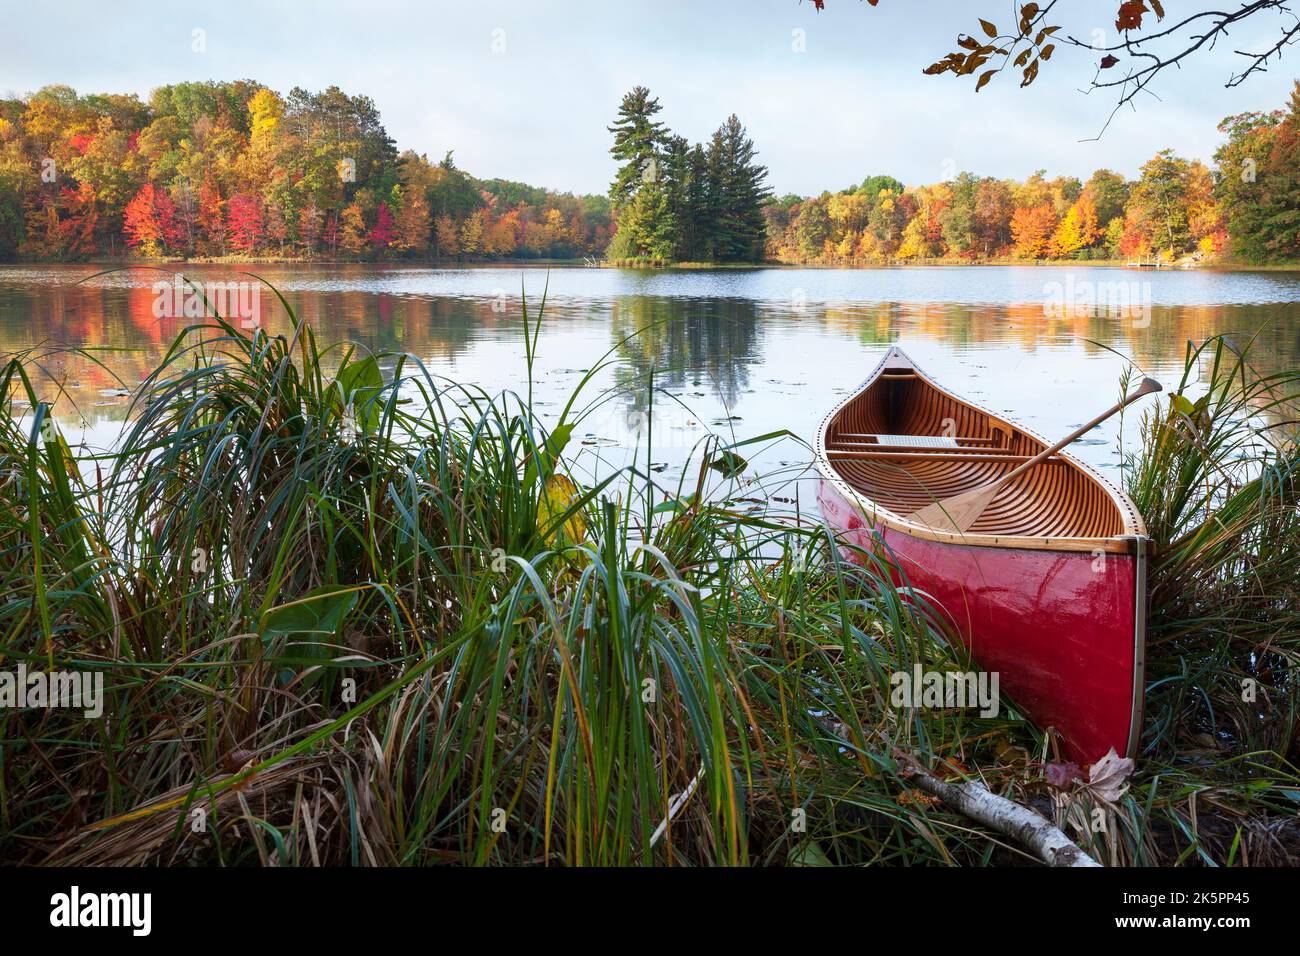 Canoë en bois rouge sur la rive du lac avec des arbres de couleur automnale et une petite île Banque D'Images